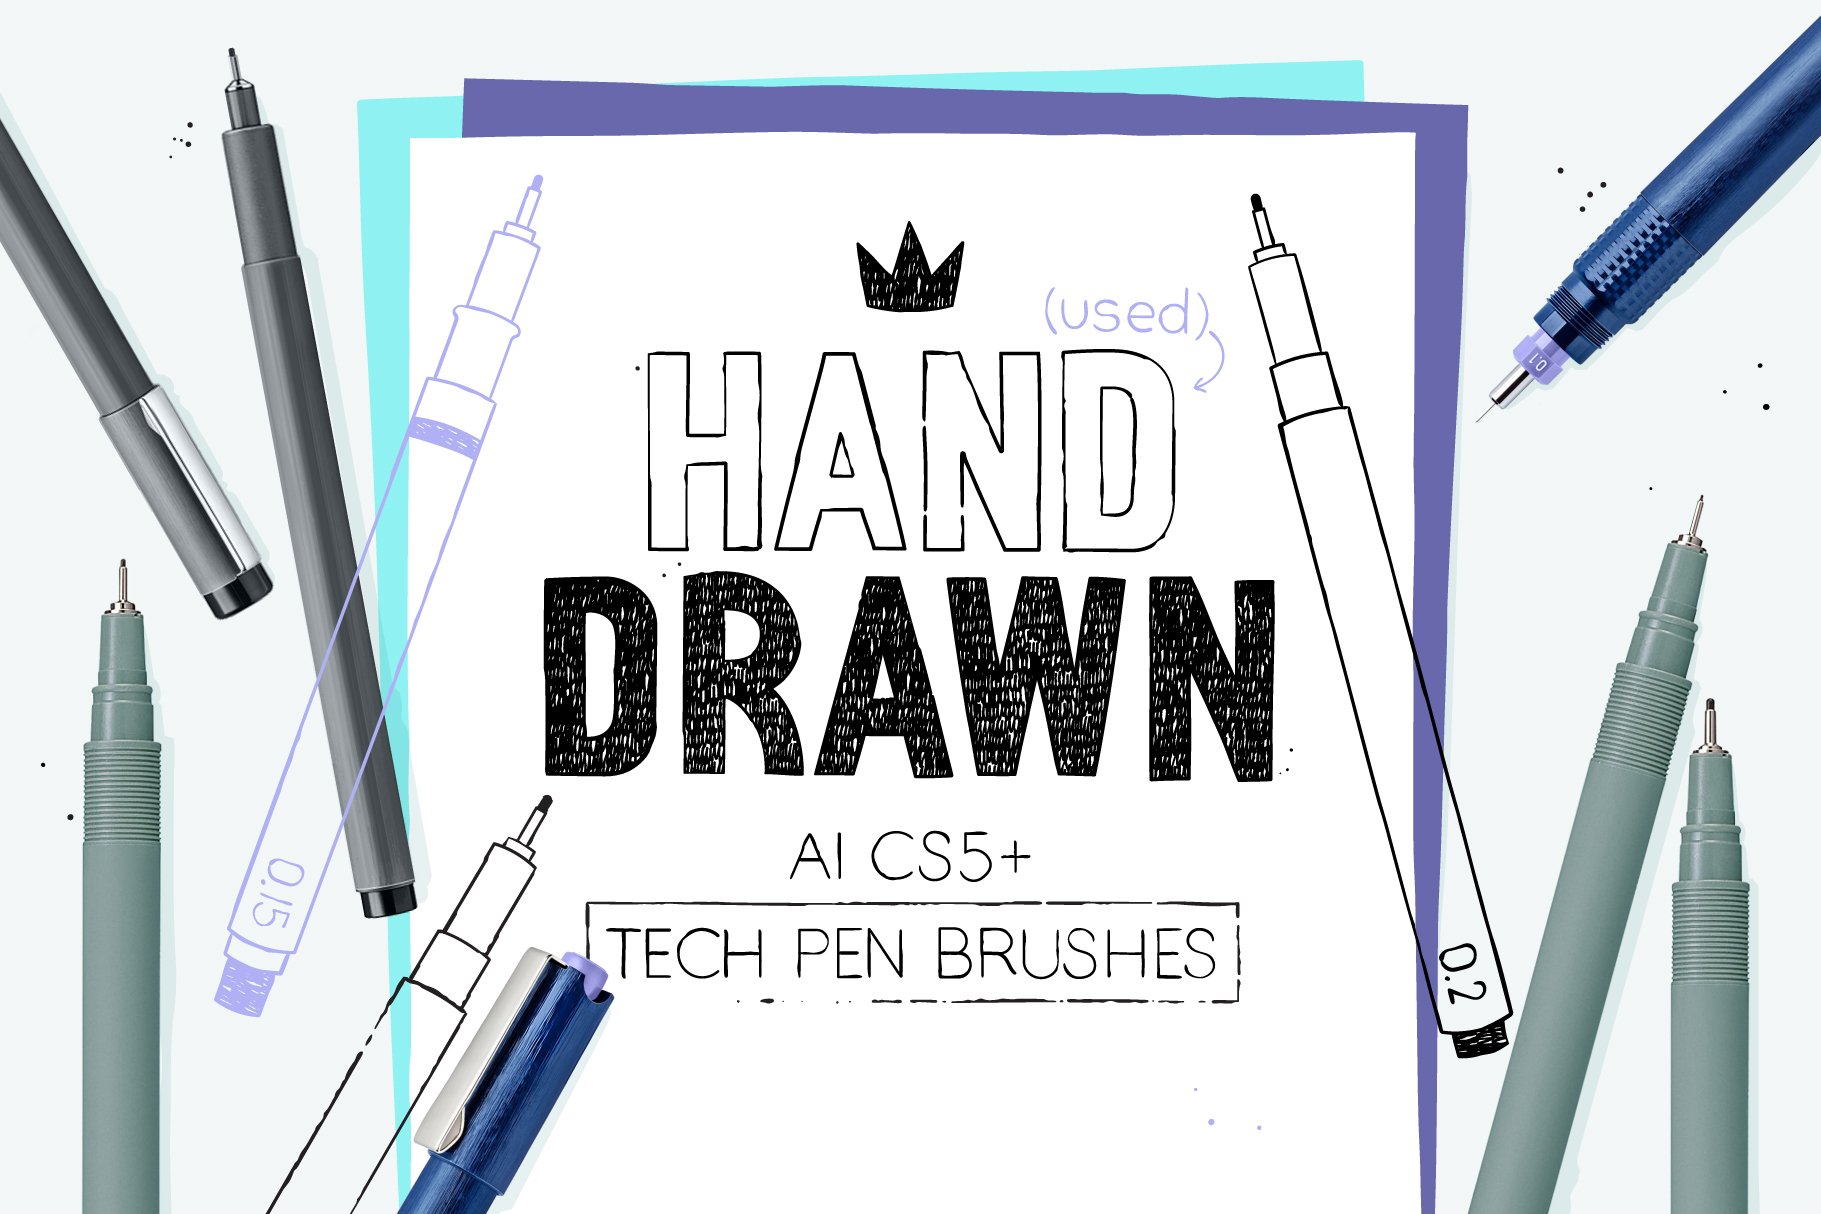 AI Technical Pen Brushes - Design Cuts